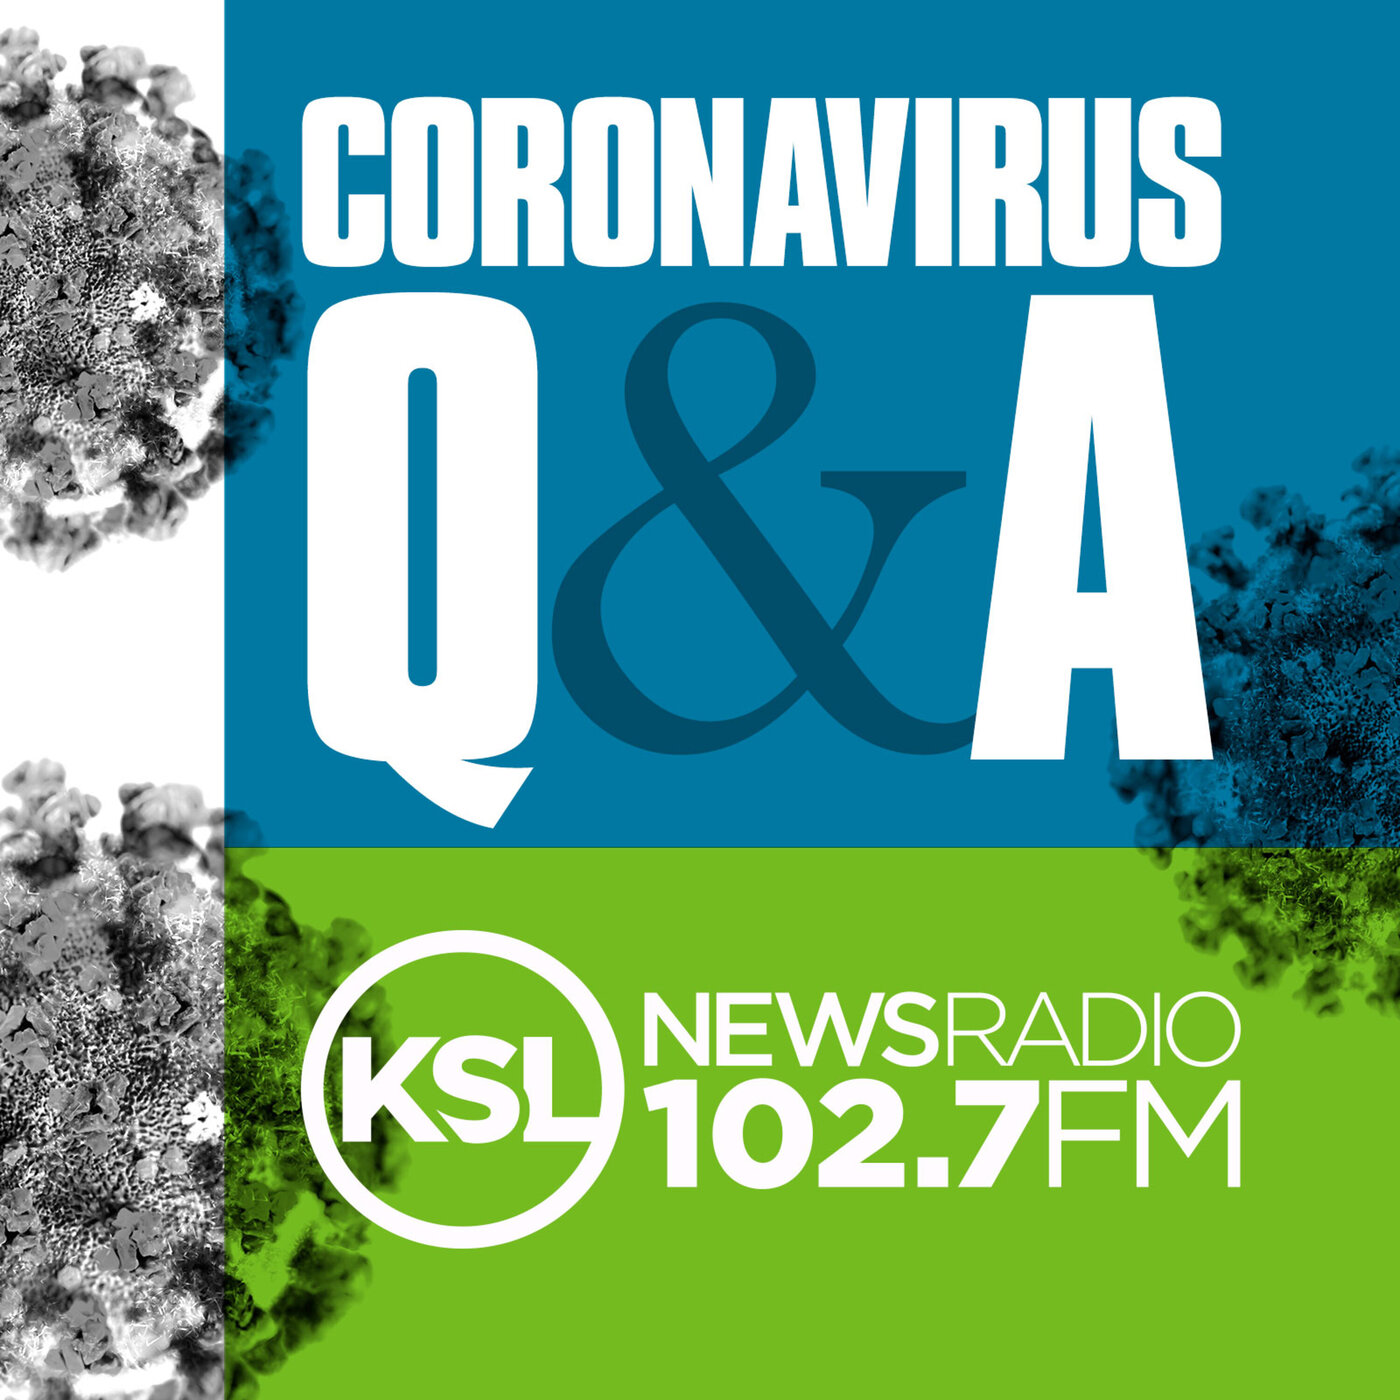 Coronavirus Update November 4th